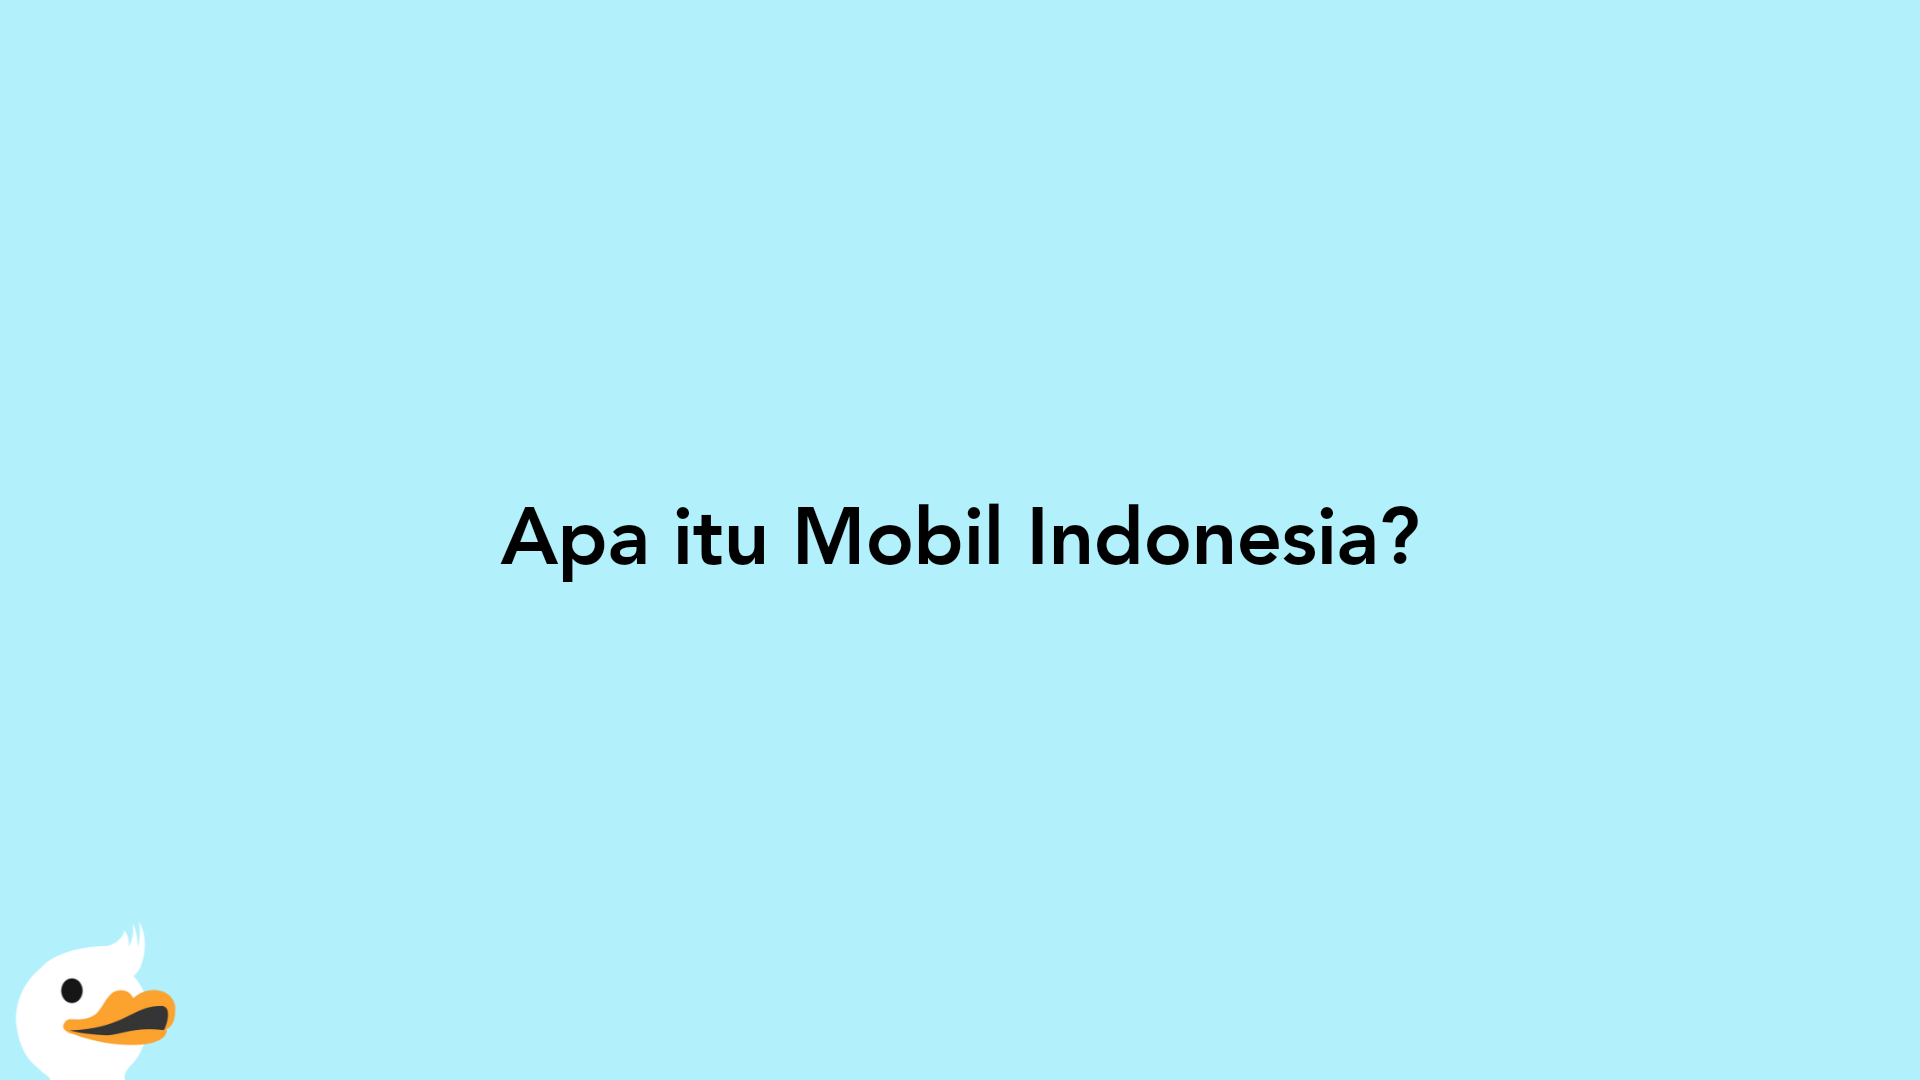 Apa itu Mobil Indonesia?